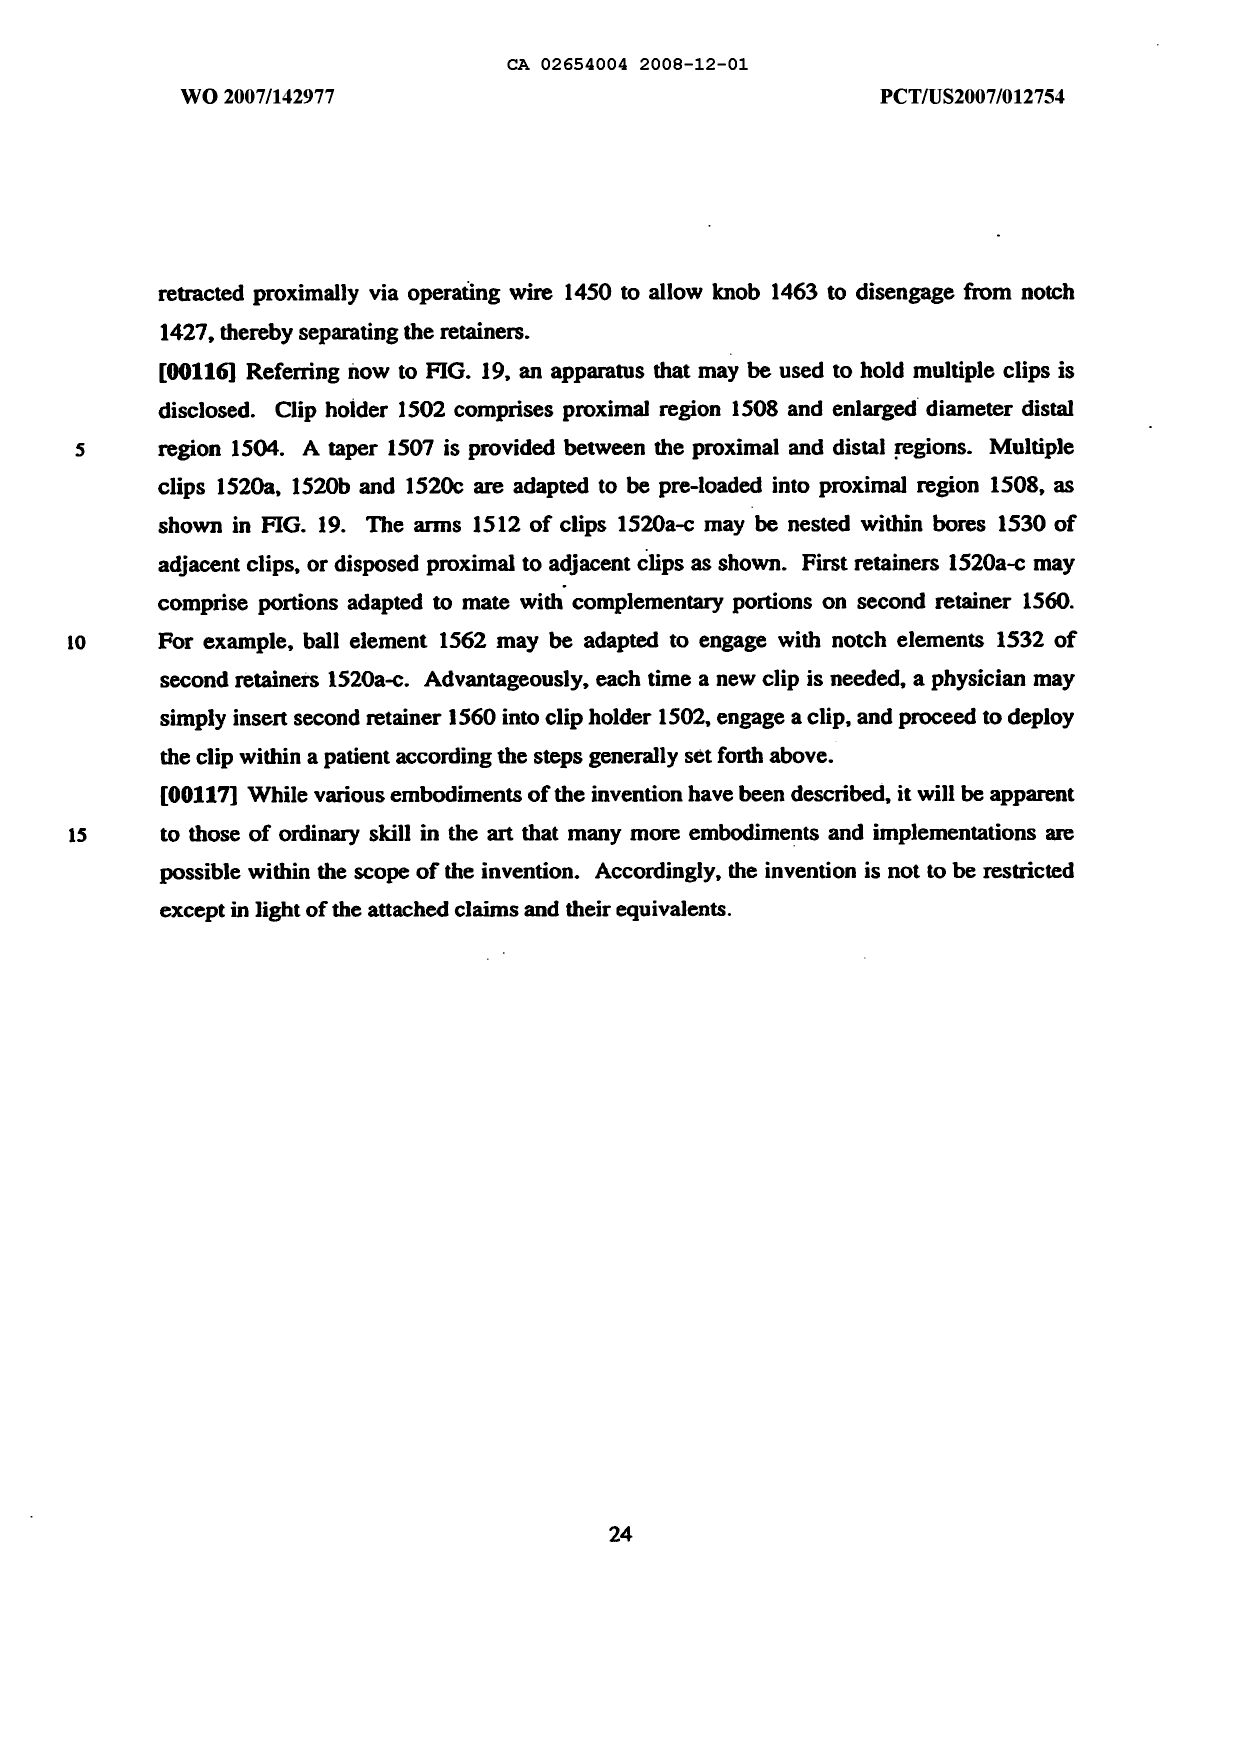 Document de brevet canadien 2654004. Description 20071201. Image 24 de 24